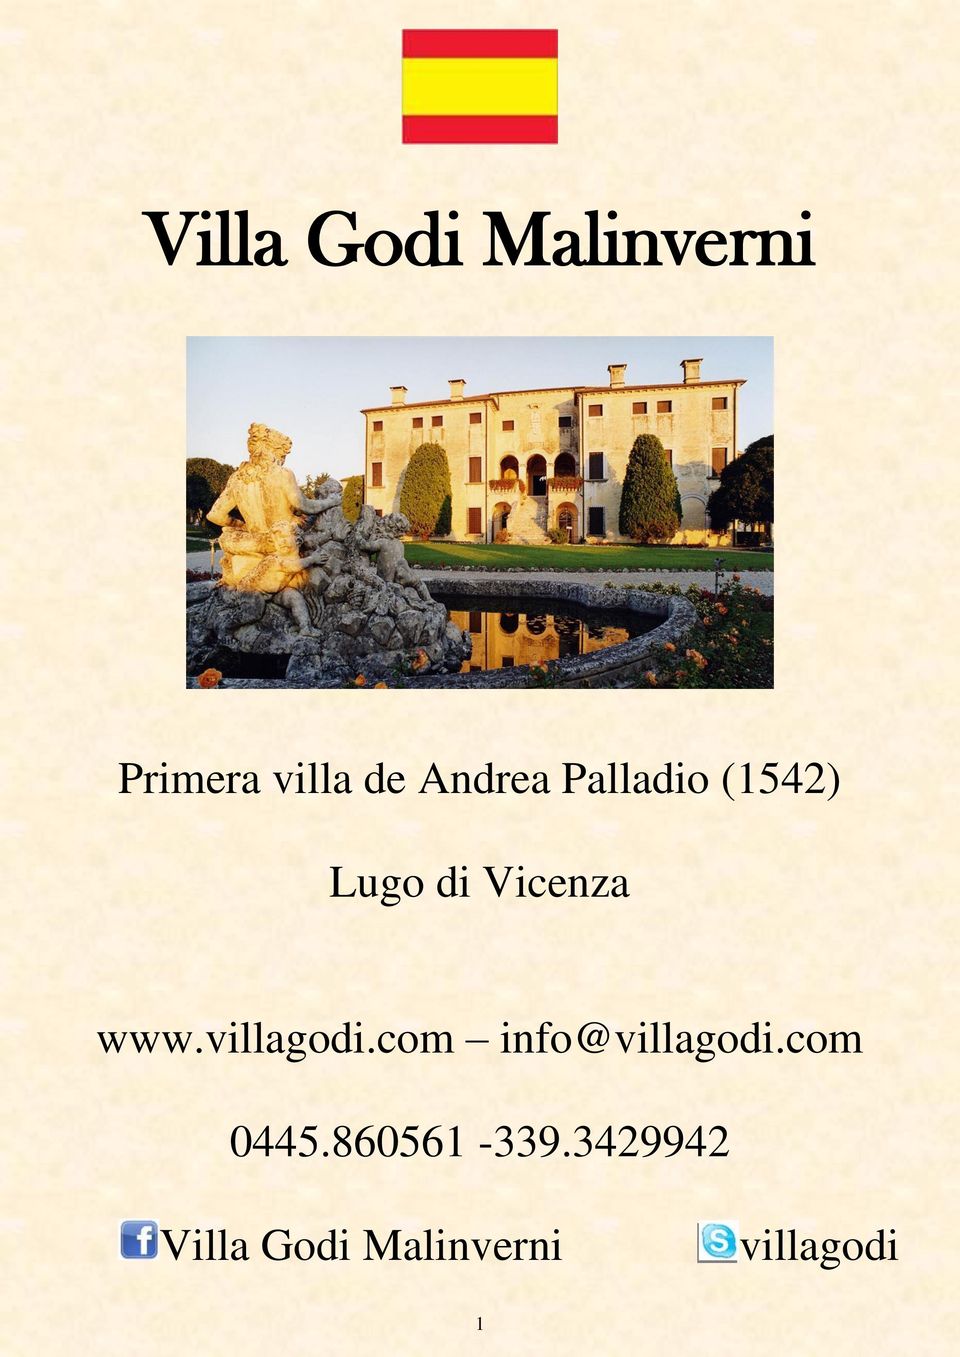 villagodi.com info@villagodi.com 0445.